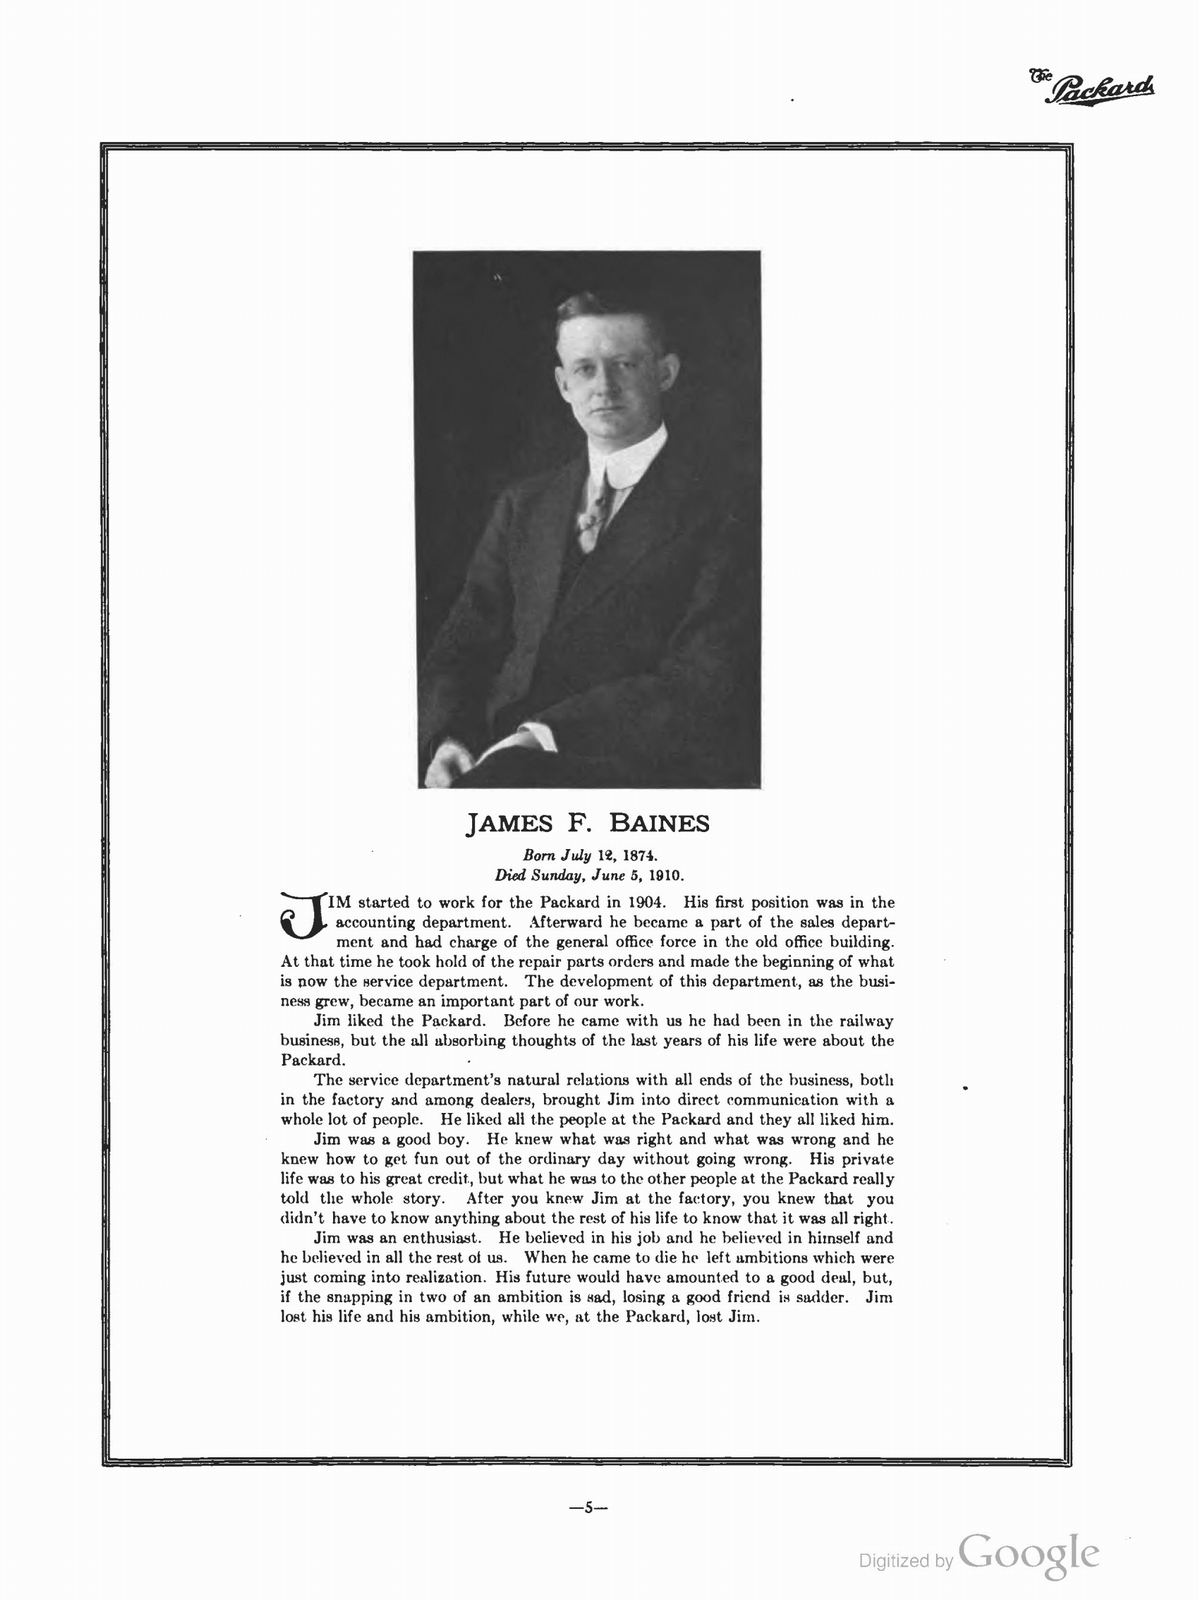 n_1910 'The Packard' Newsletter-023.jpg